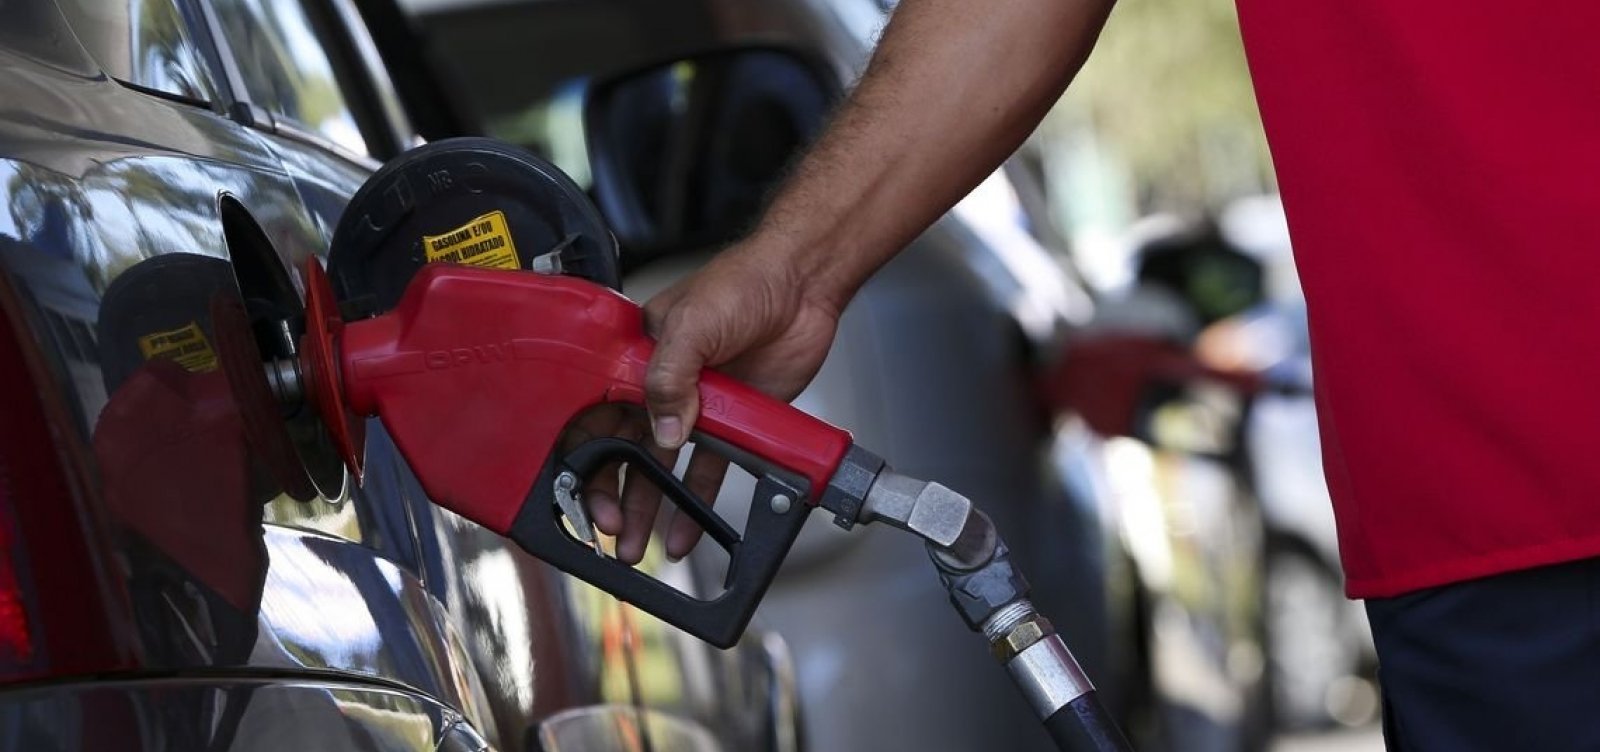 Petrobras aumenta preço do diesel em 4,2% e da gasolina em 3,5% nas refinarias